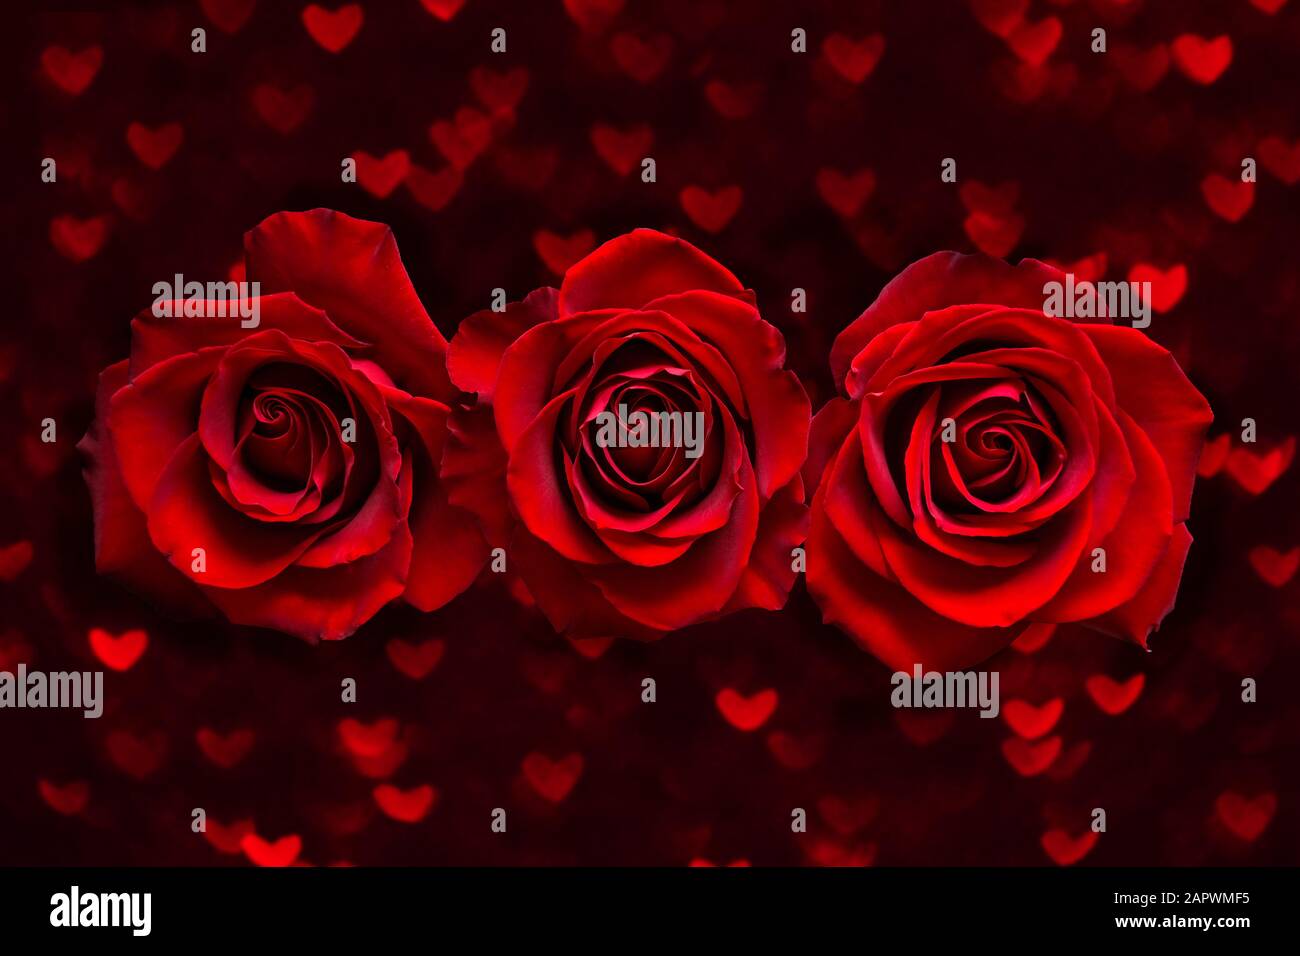 Valentinskarte mit drei roten Rosen auf dunklem Herzboke-Hintergrund. Love and Wedding Day Konzept. Stockfoto